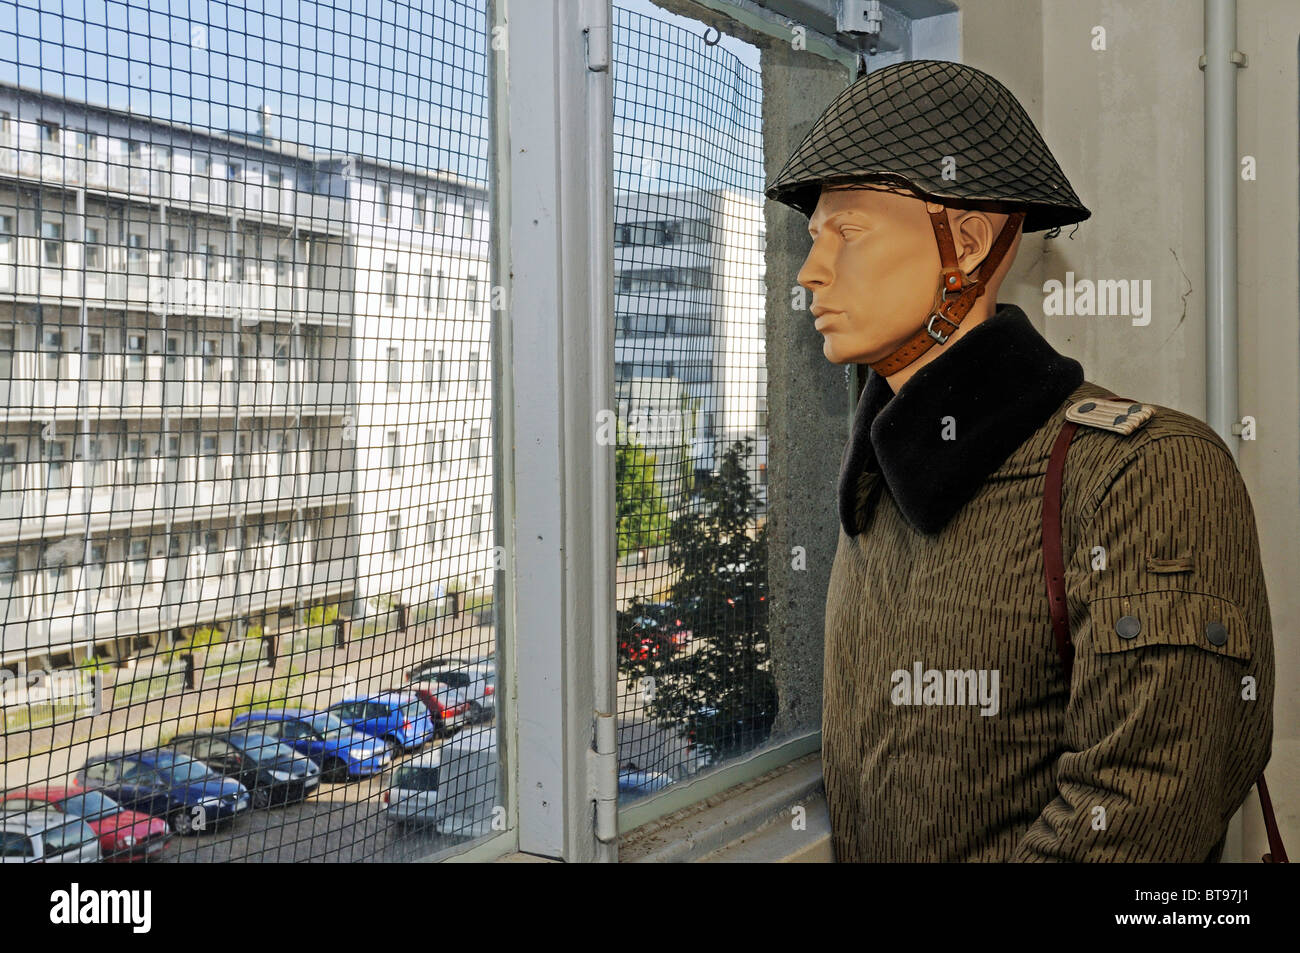 Memorial Guenter Litfin für die erste Person erschossen Toten an der Berliner Mauer, Kieler Strasse Straße in Berlin-Spandau Stockfoto